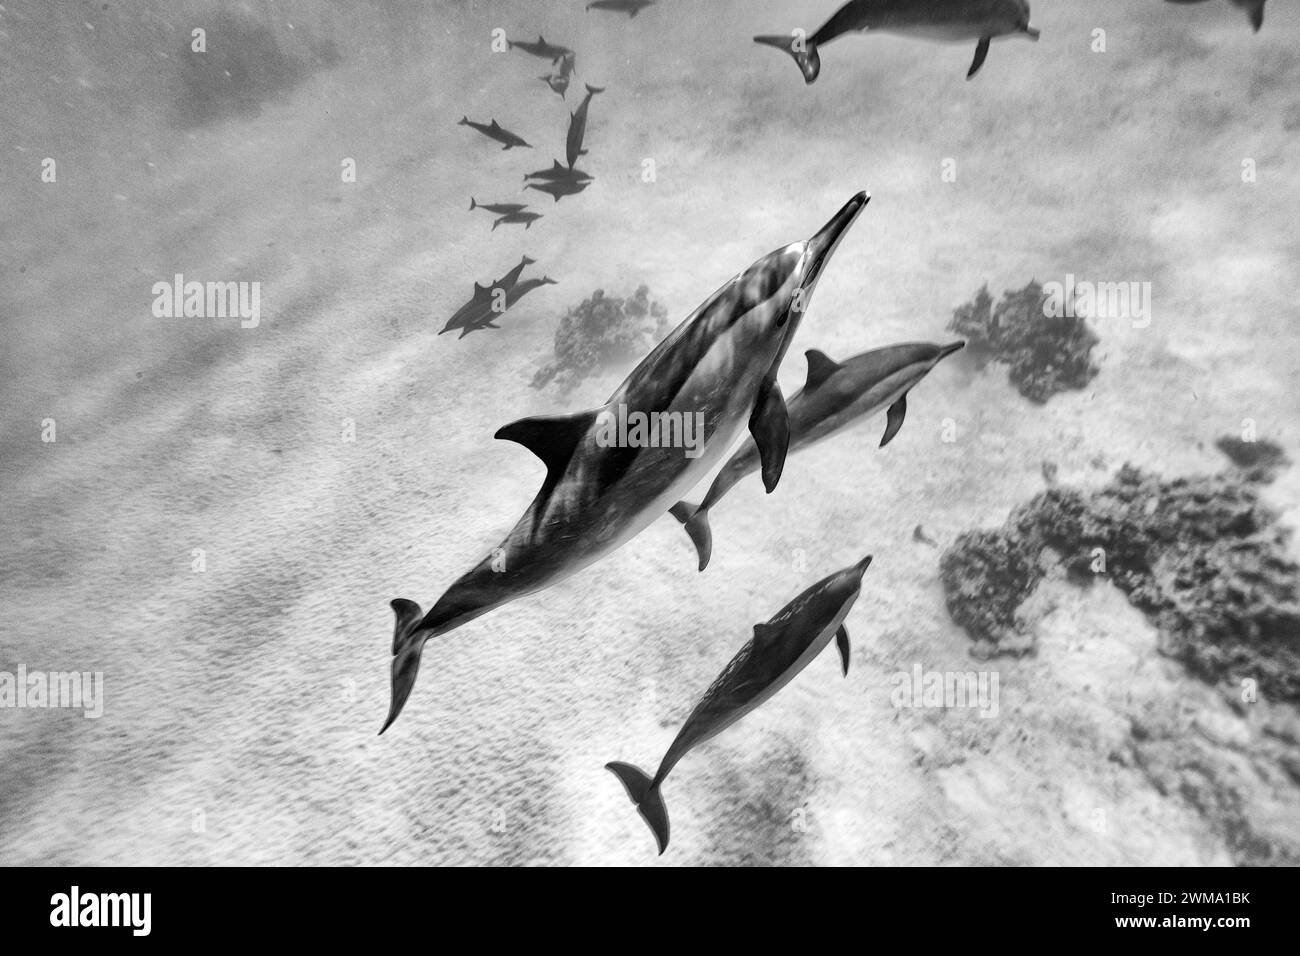 Los delfines inteligentes y juguetones Red Sea Spinner, Stenella longirostris, nadan en aguas tropicales azules claras Foto de stock